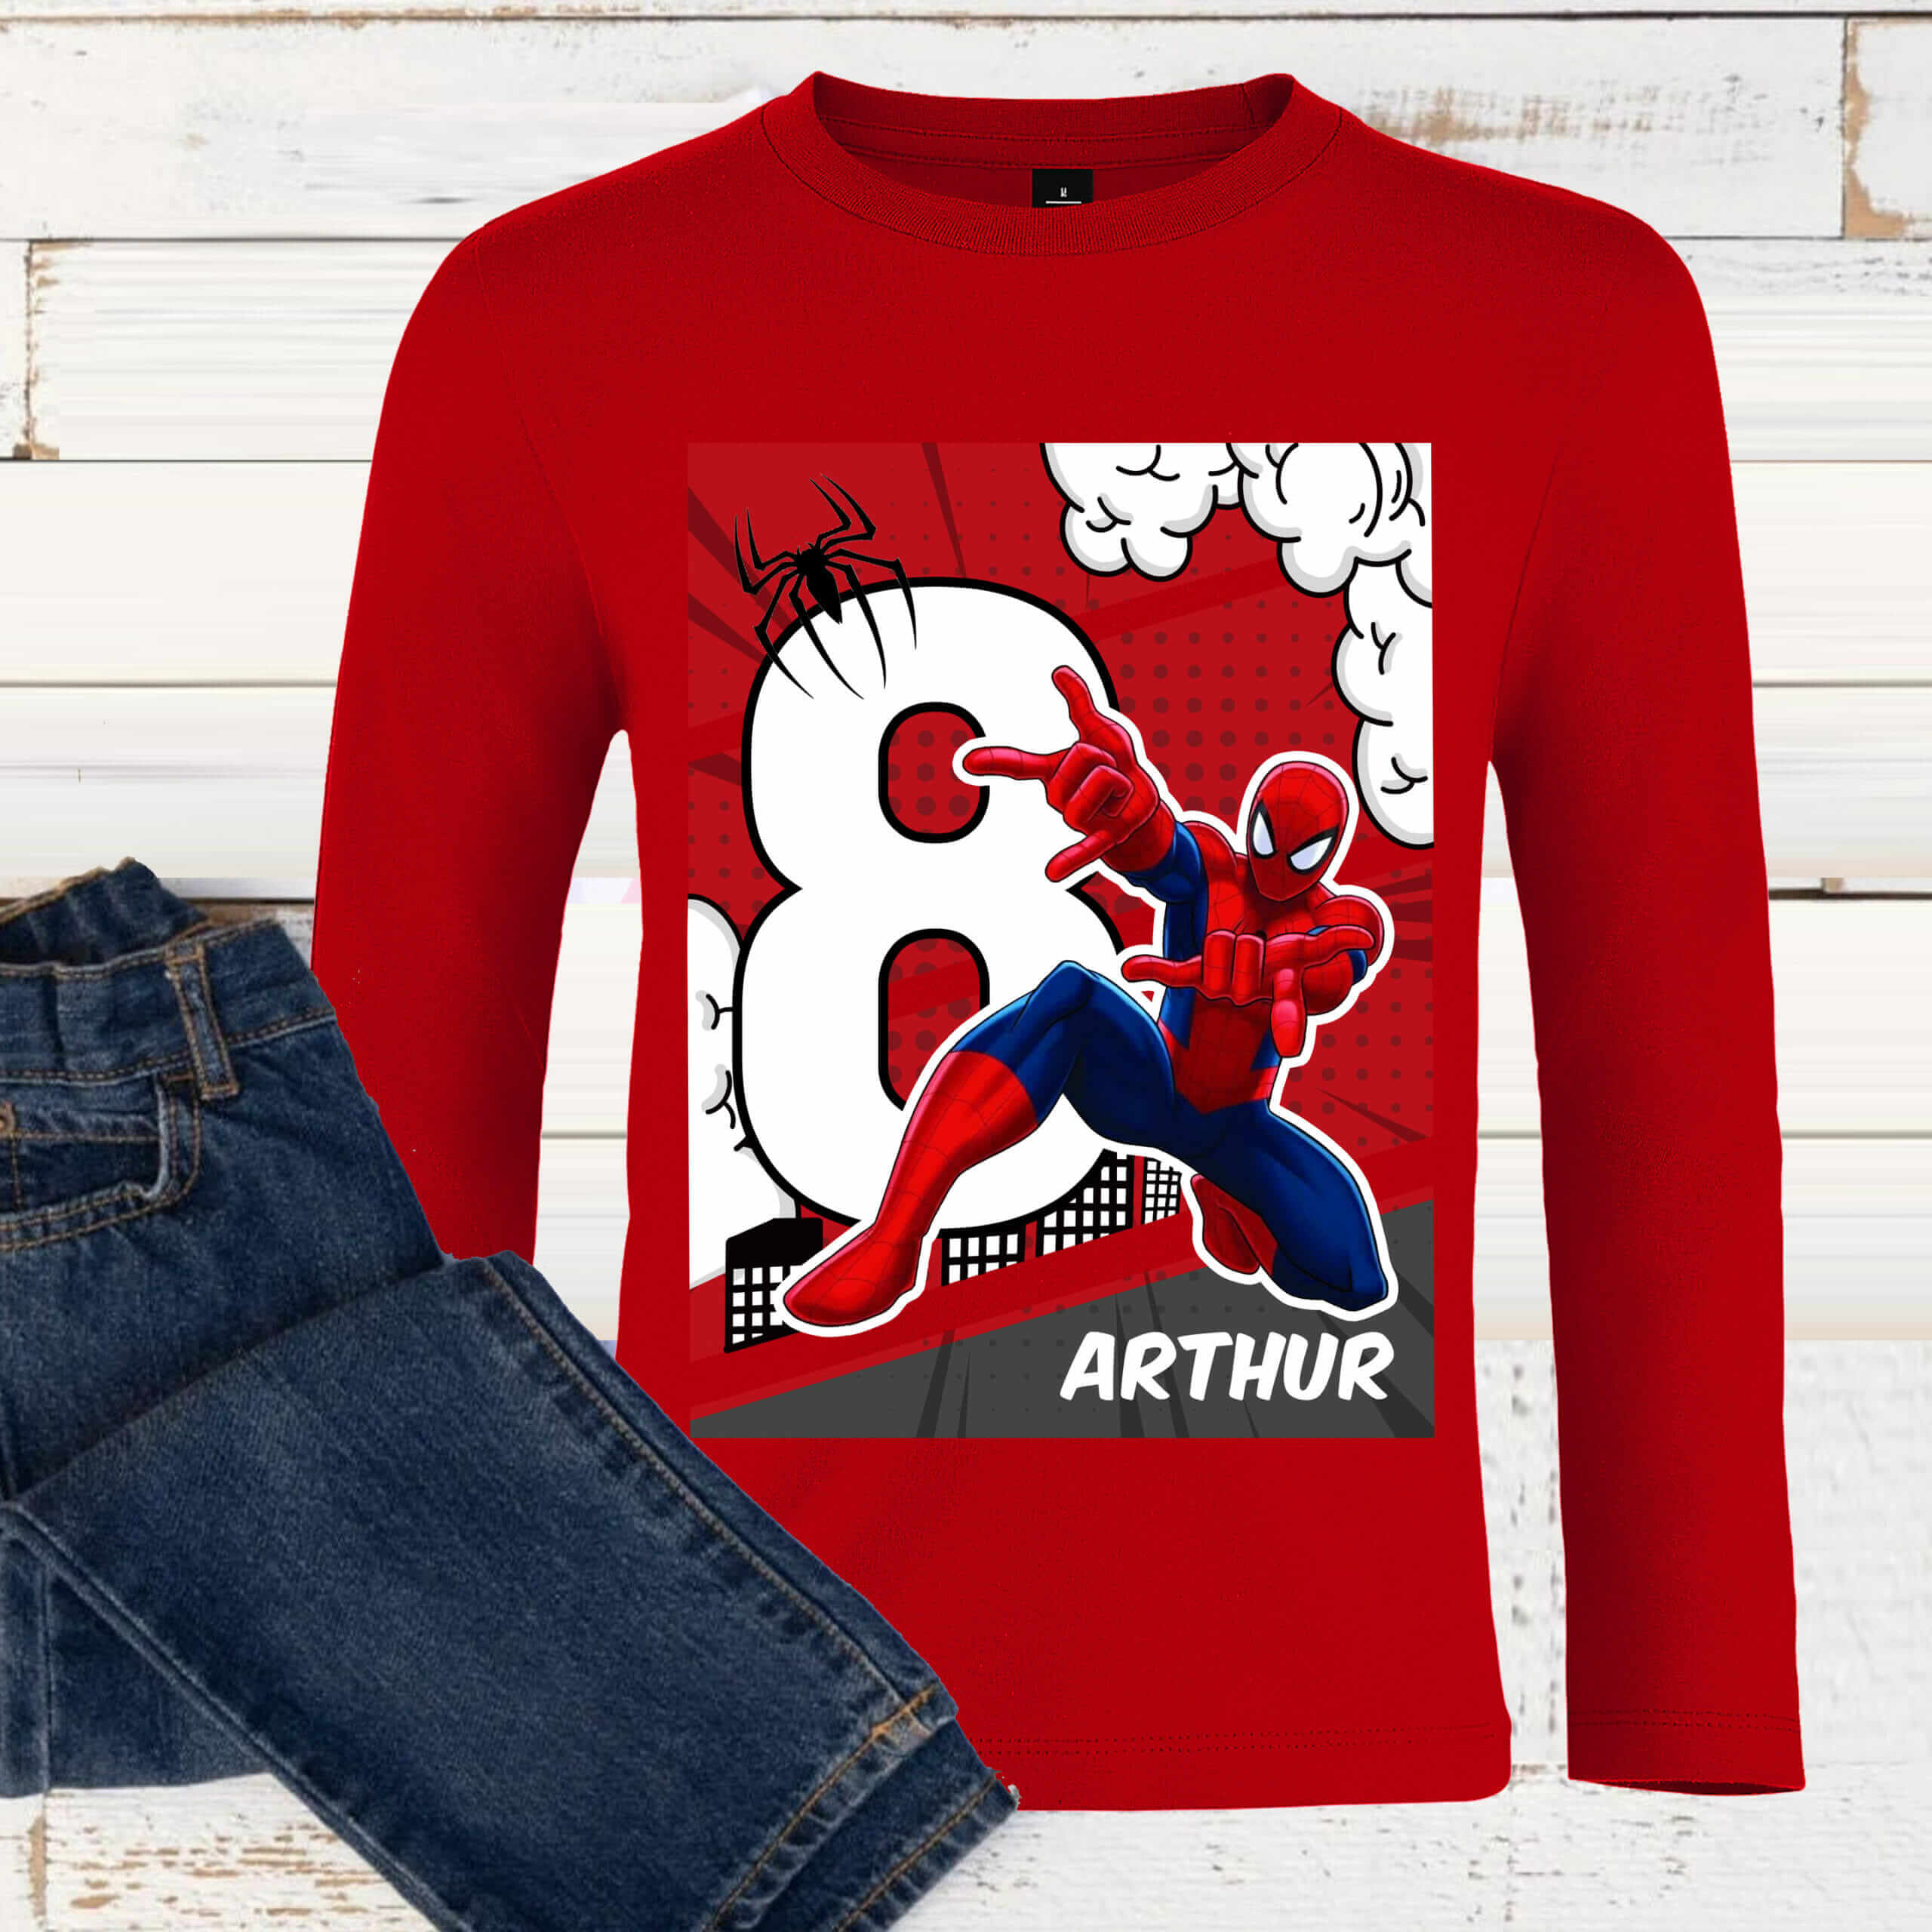 T-shirt anniversaire Spider-Man